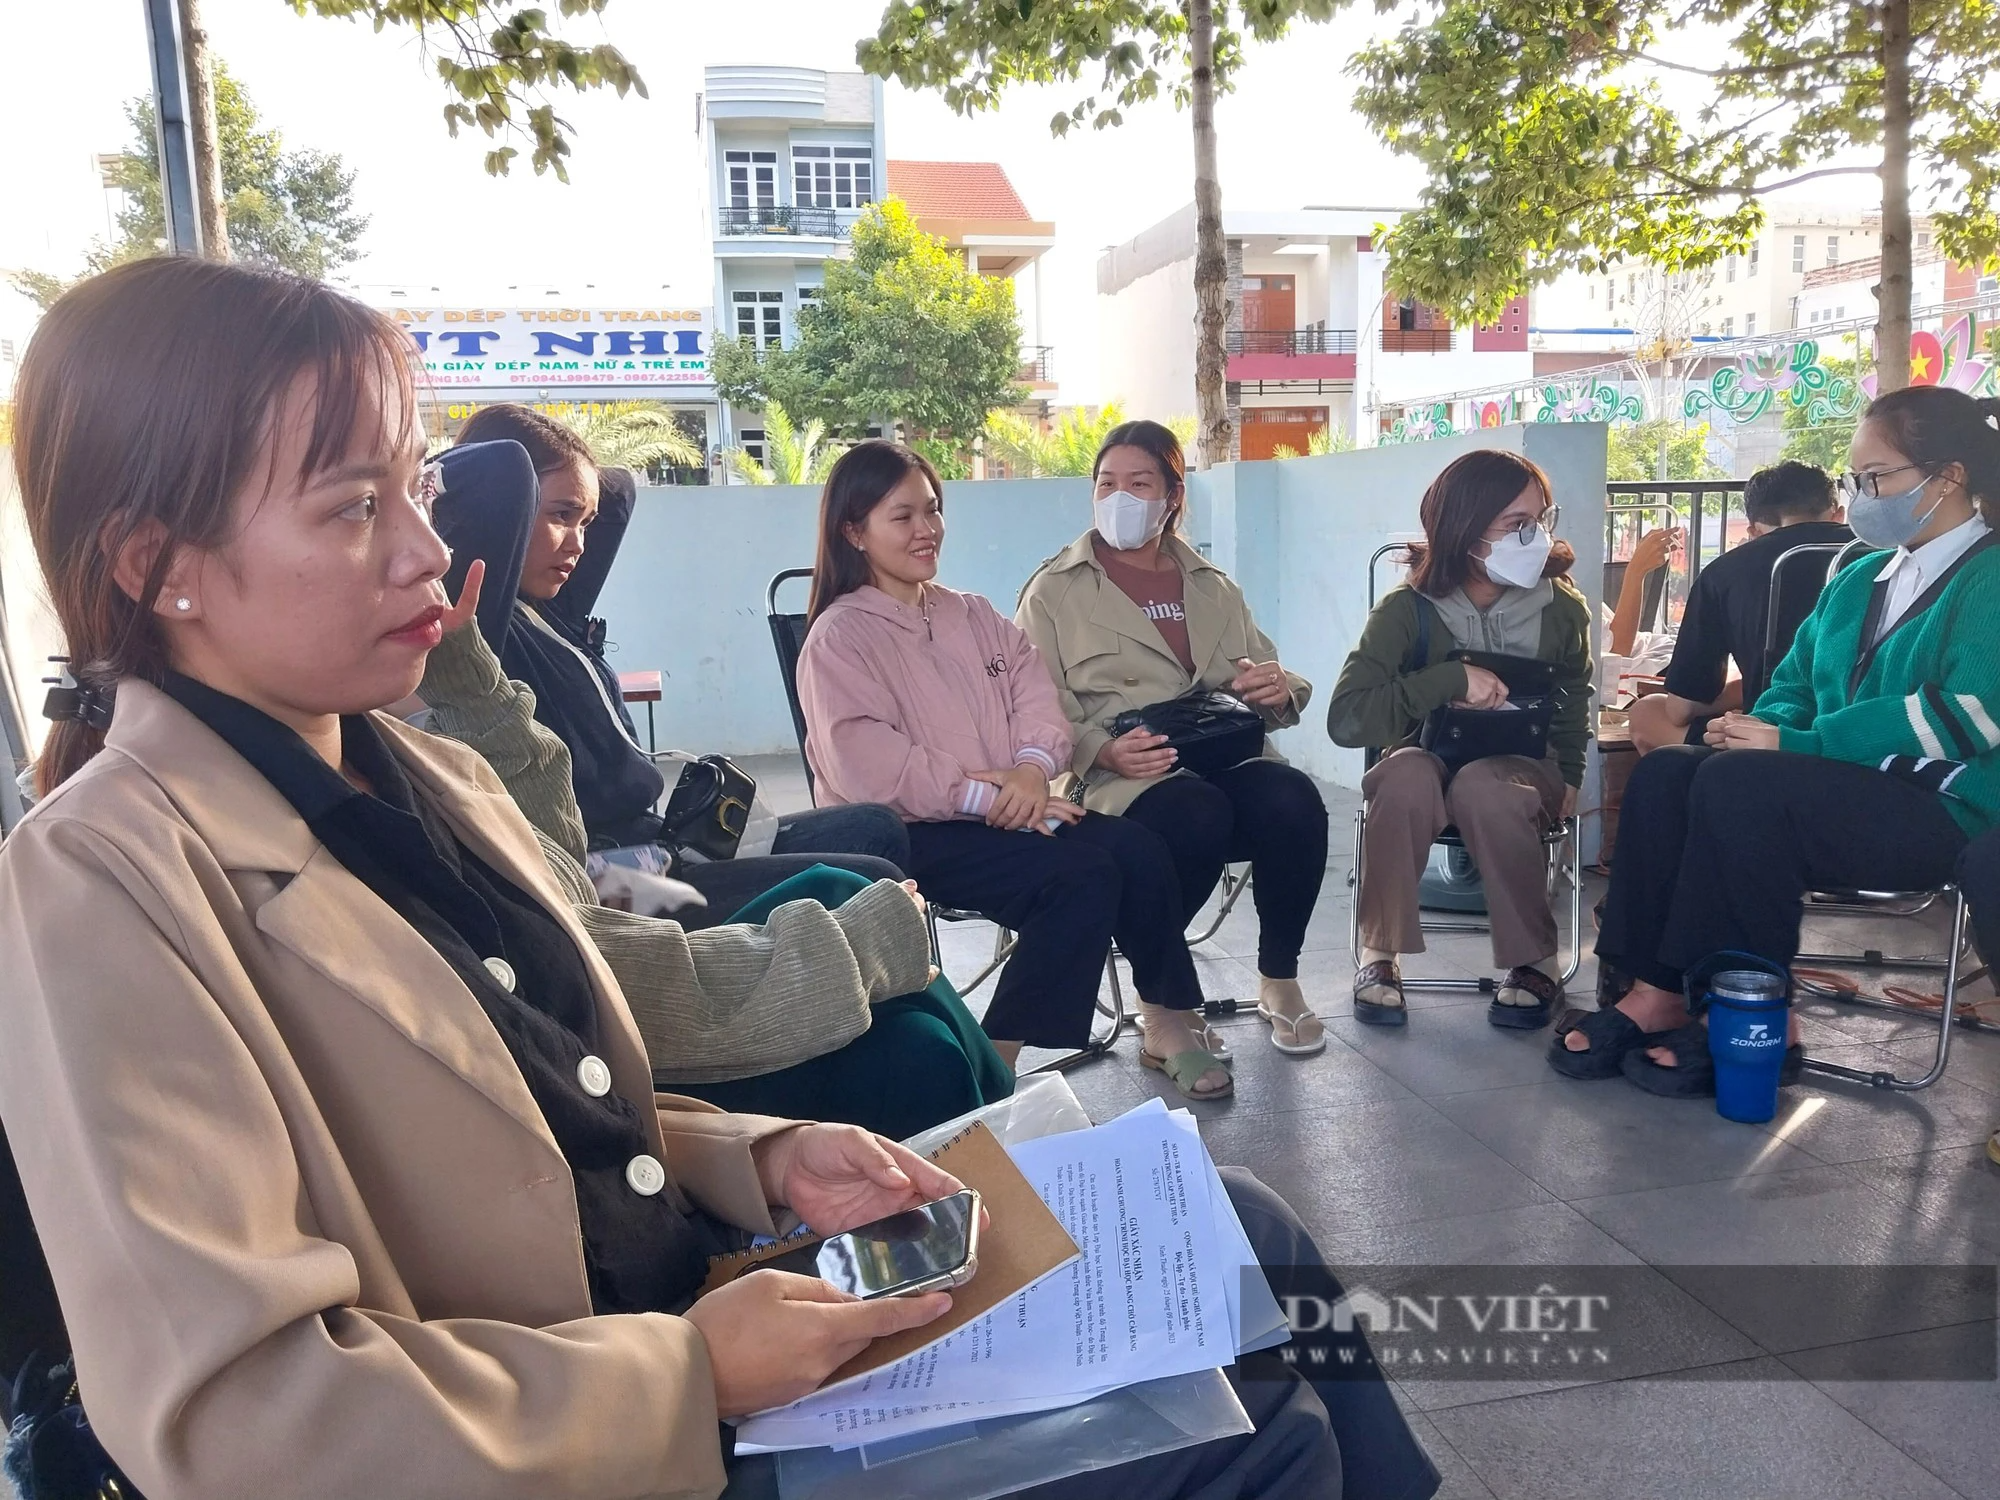 Hơn 50 sinh viên kêu cứu vì bị “nợ bằng” do nhà trường chưa chuyển học phí  ở Ninh Thuận  - Ảnh 1.